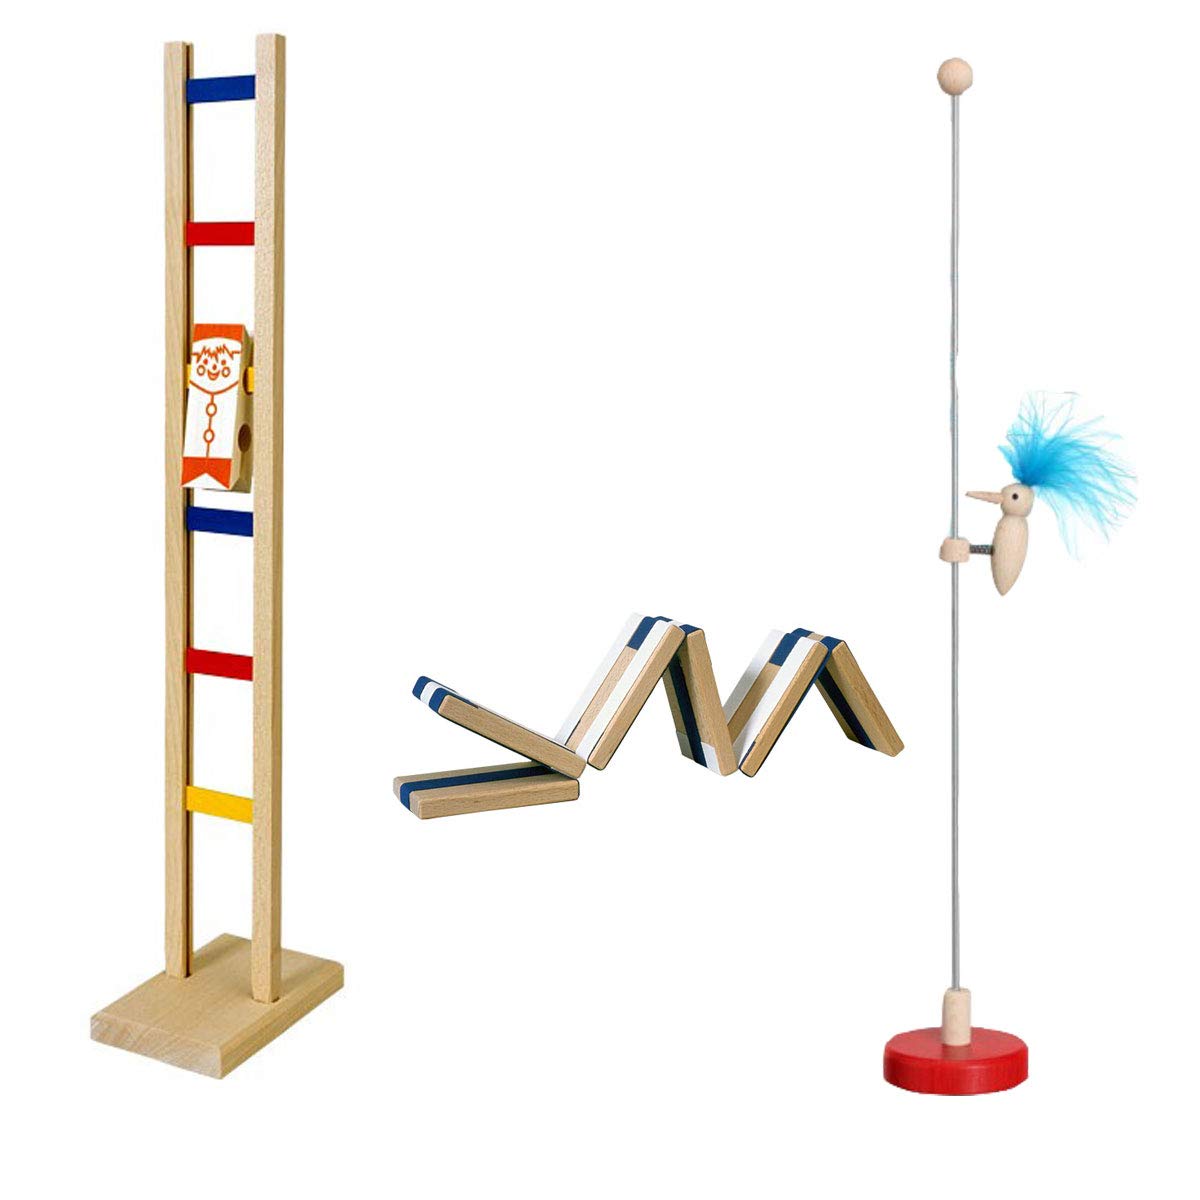 GICO Holzspielzeug Set 1 mit 3 klassischen Spielzeugen für Kinder aus Holz - Zauberklapperschlange, Leitermännchen, Klapperspecht 6550,6520,6502